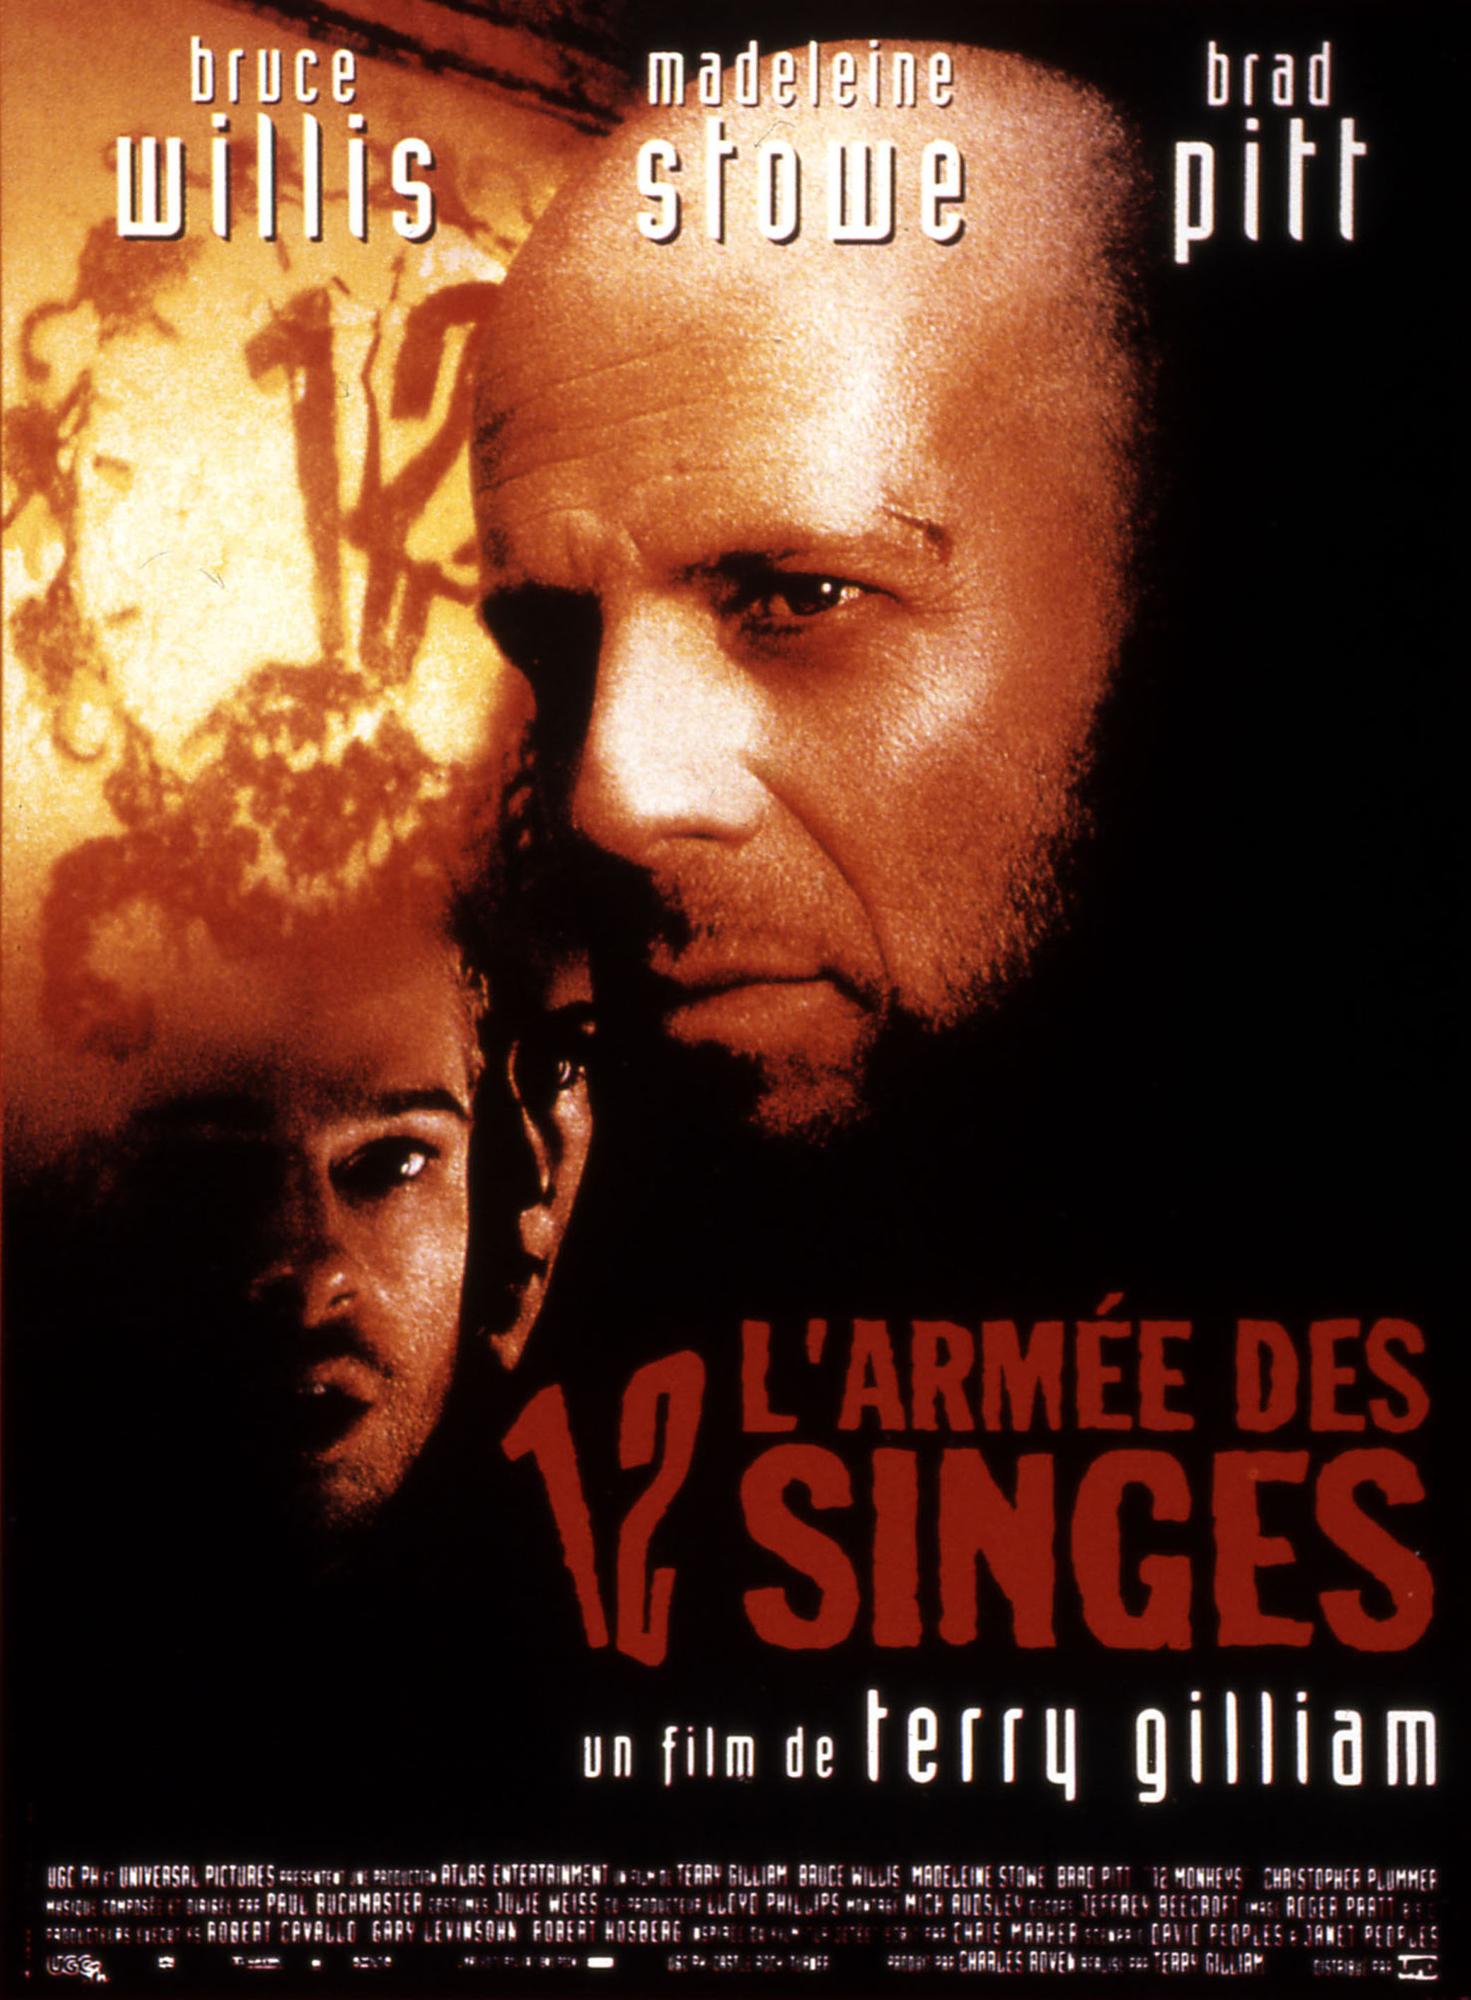 L'affiche du film "L'Armée des 12 singes" de Terry Gilliam.